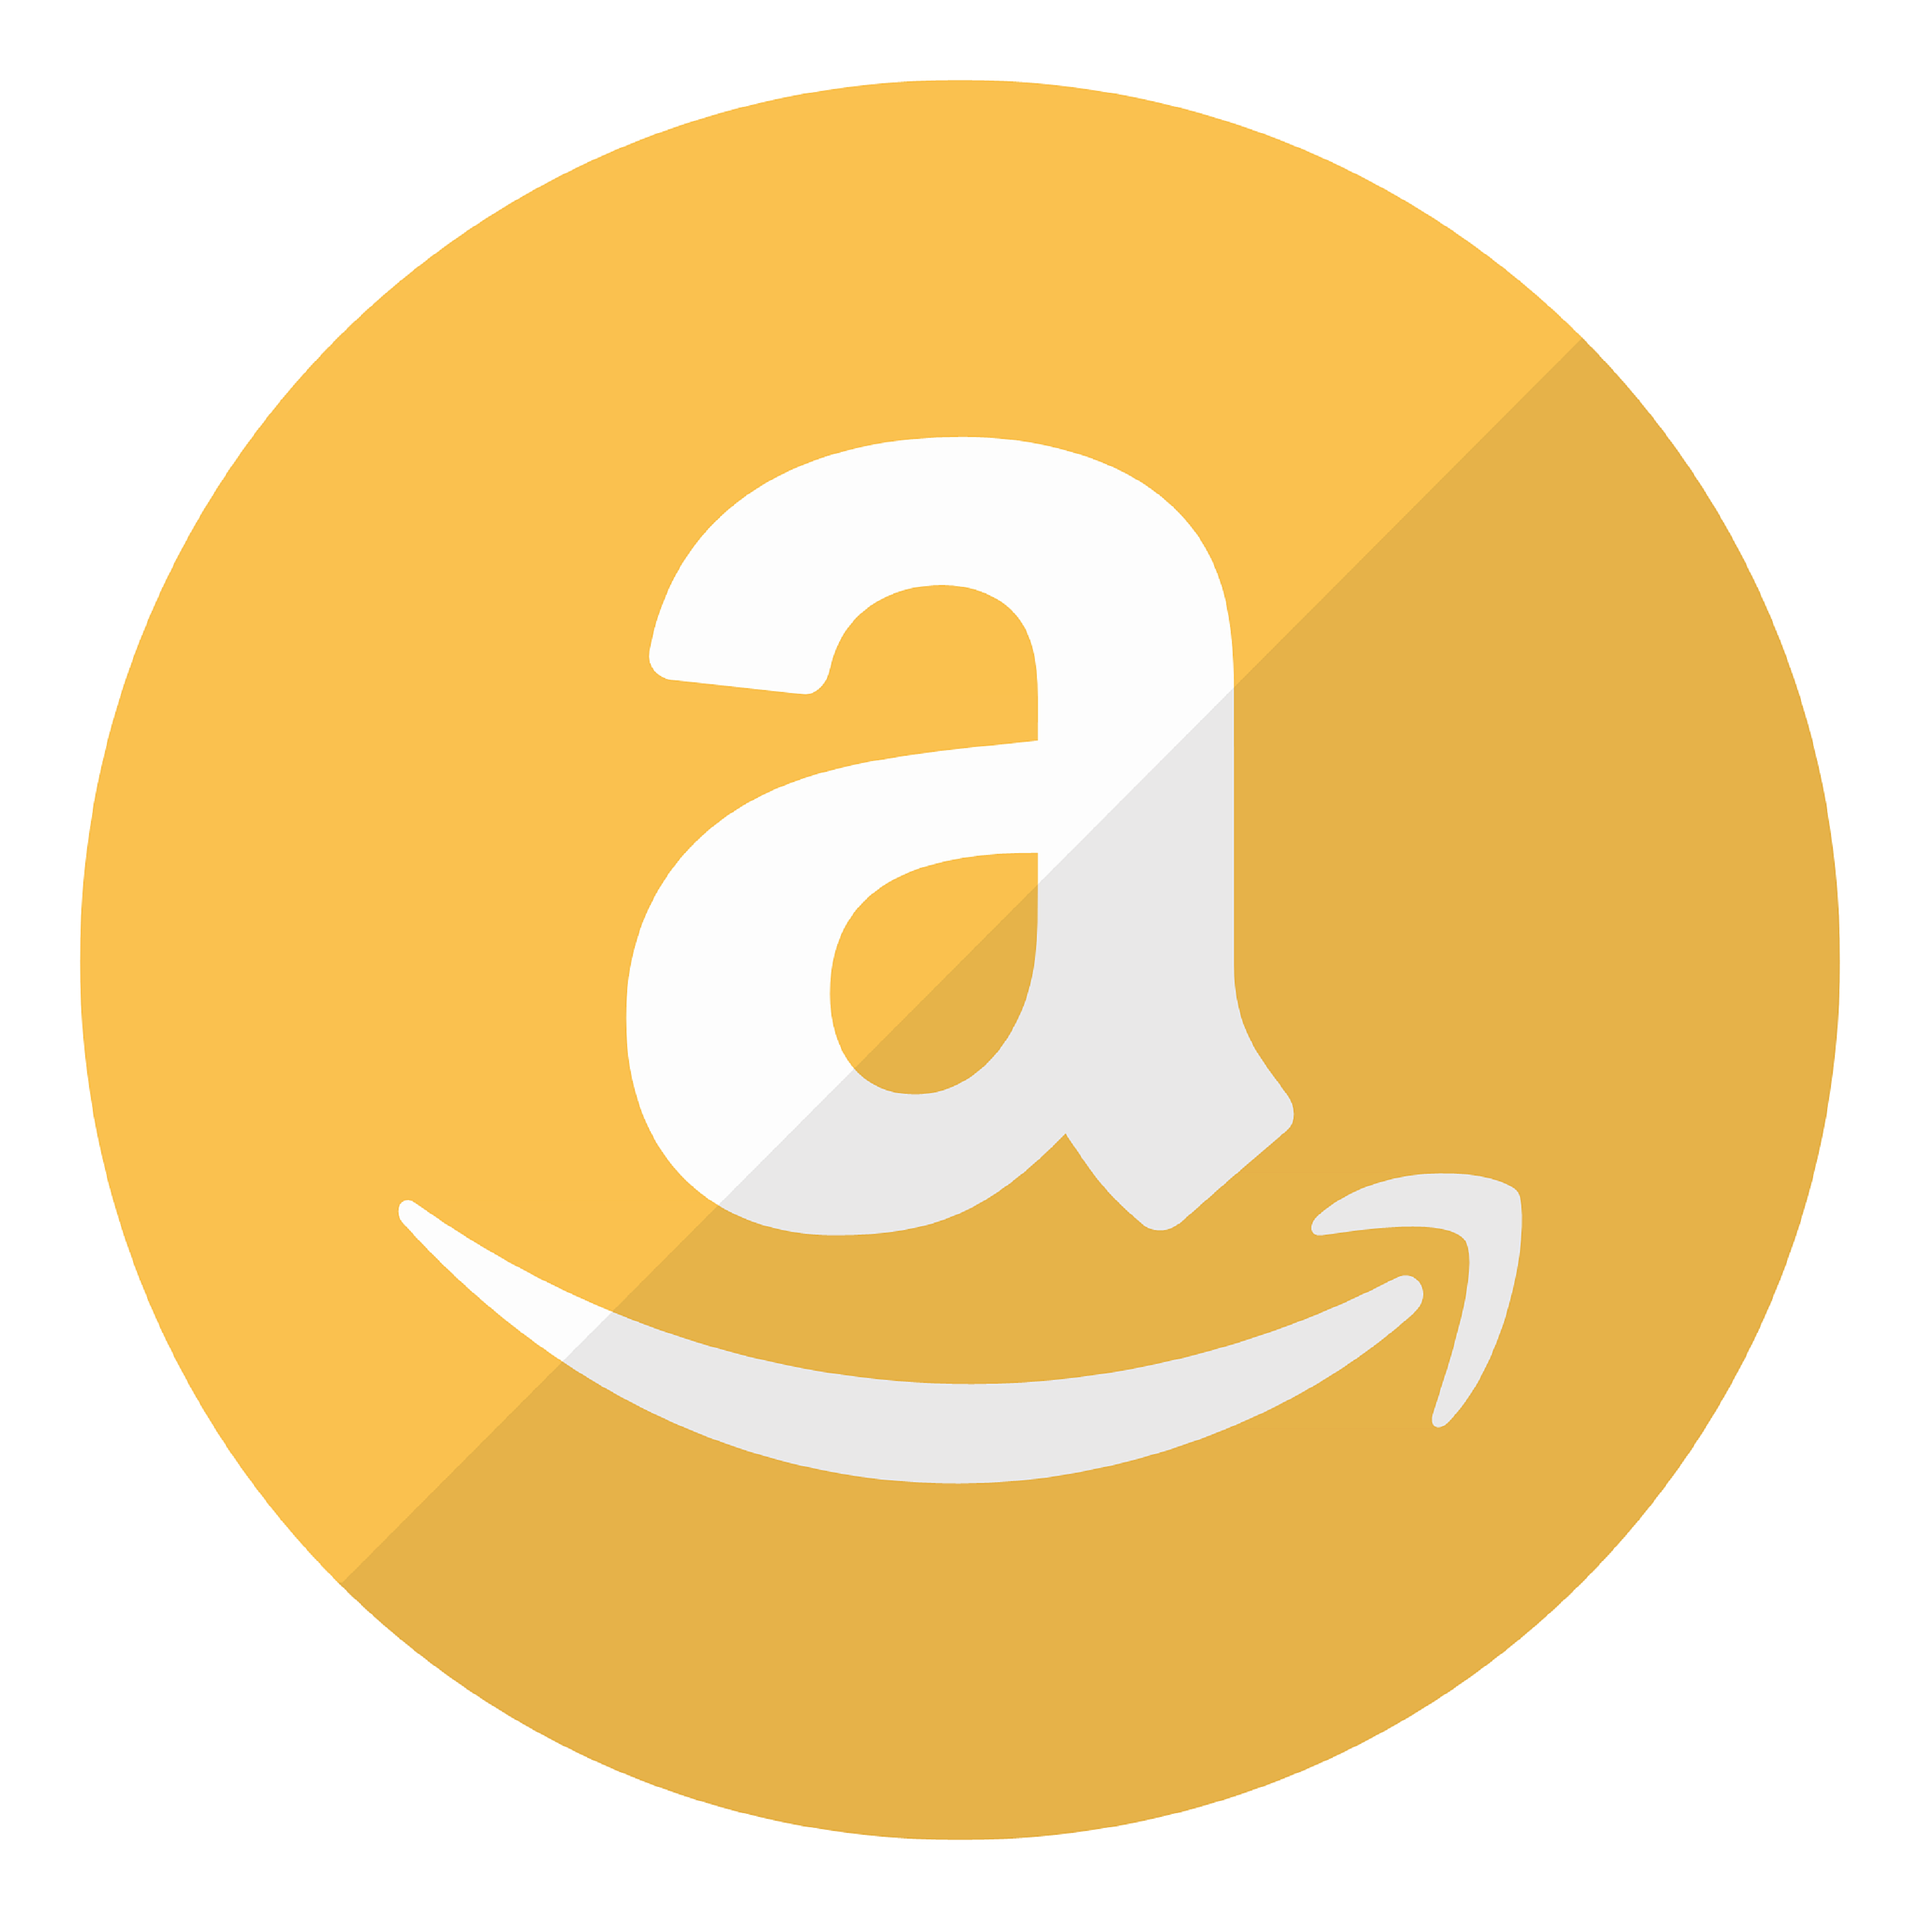 Come regalare un buono Amazon online